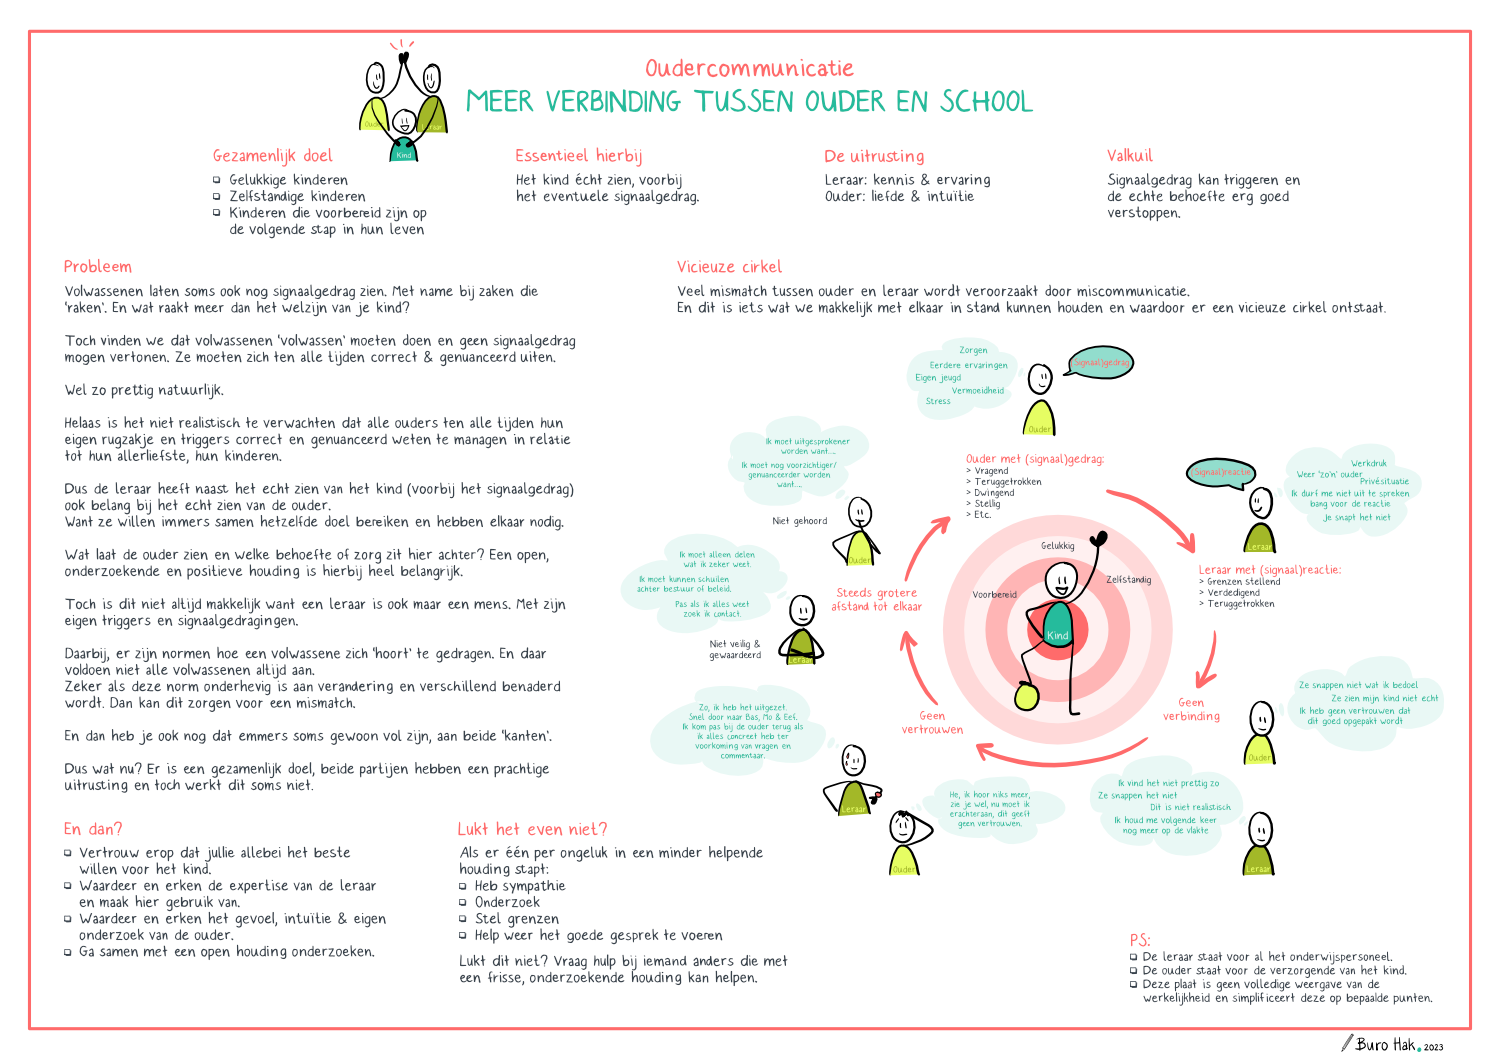 Praatplaat of infographic van ouder en schoolcommunicatie die verhard en kan zorgen voor een vicieuze cirkel.